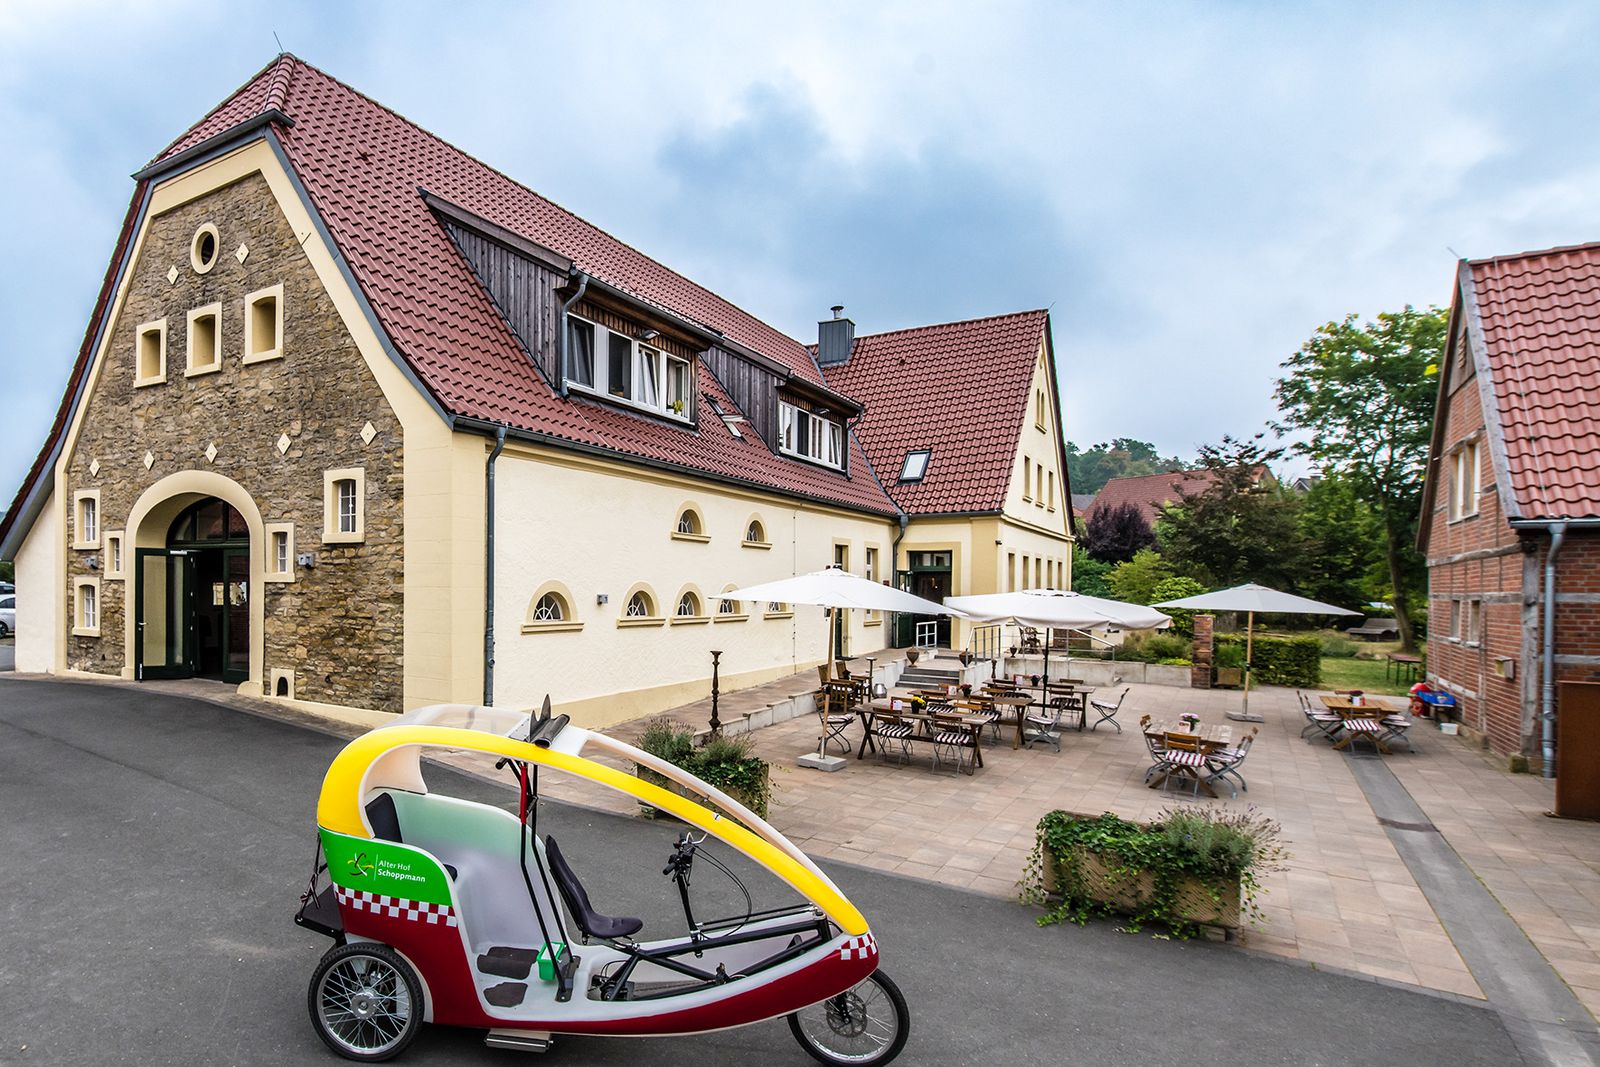 Alter Hof Schoppmann mit Cafe und Fahrradrikscha in Vordergrund